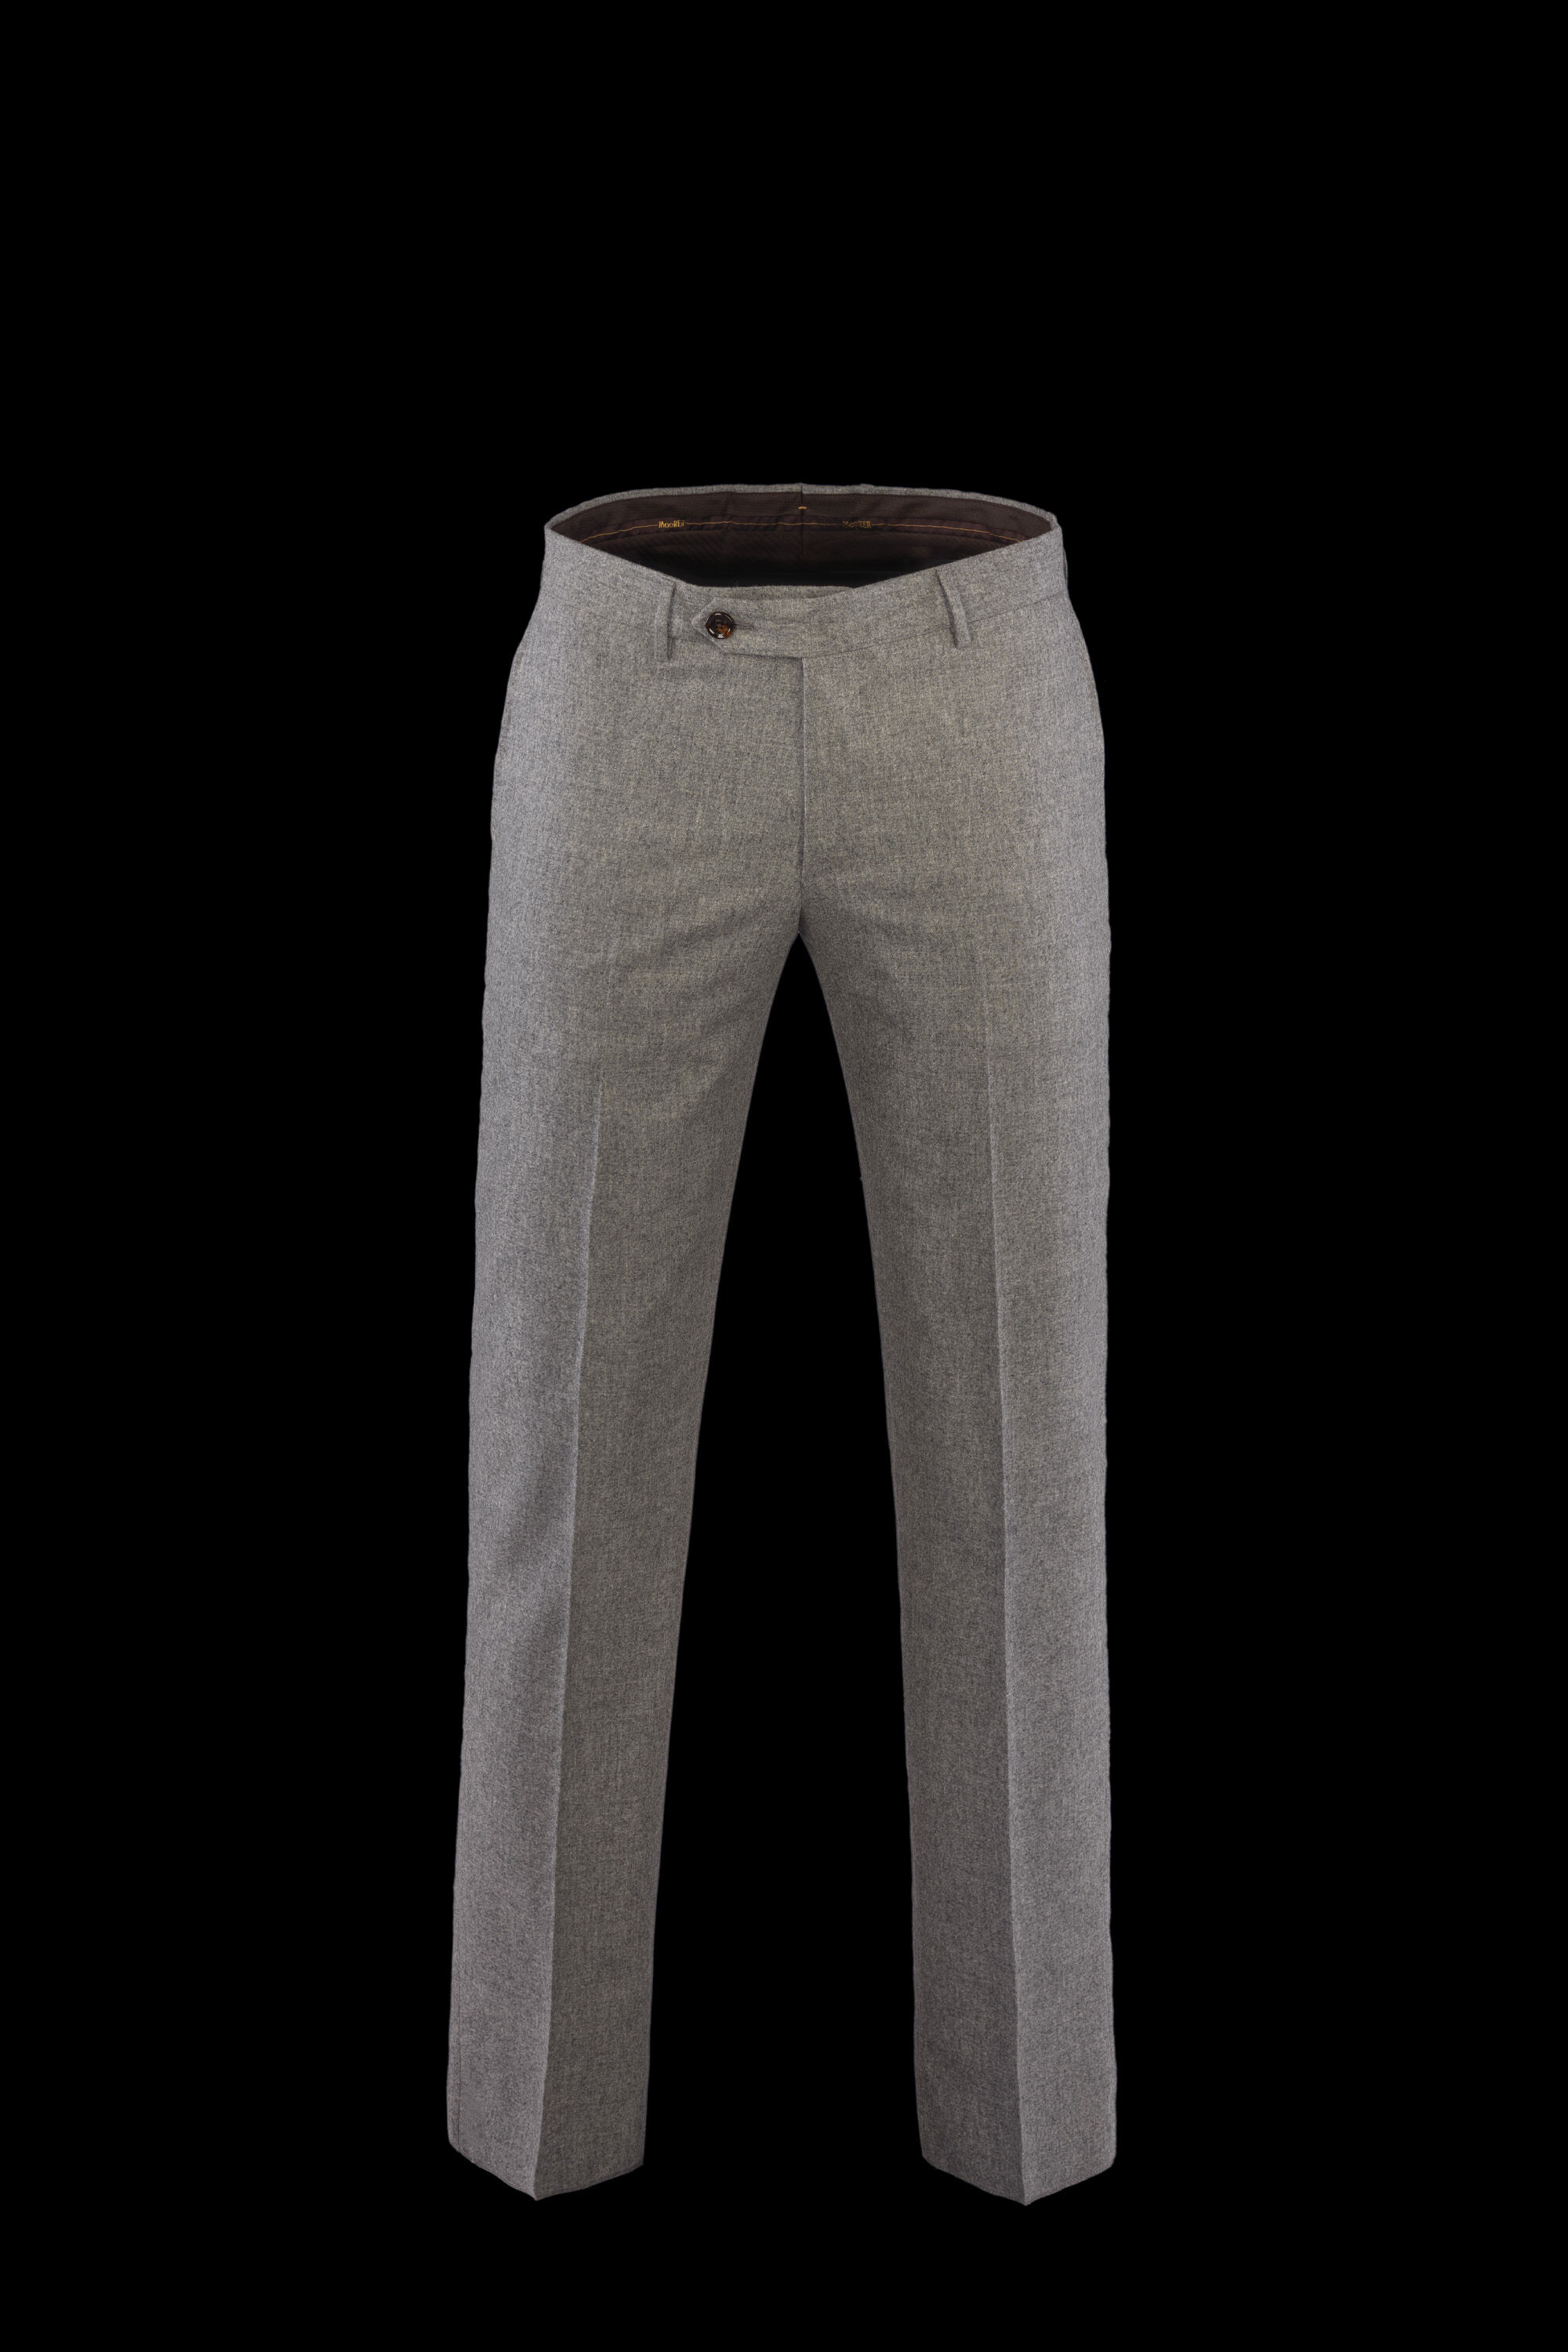 Men's Luxury Pants, Chinos & Jeans - Italian Pants | MooRER®